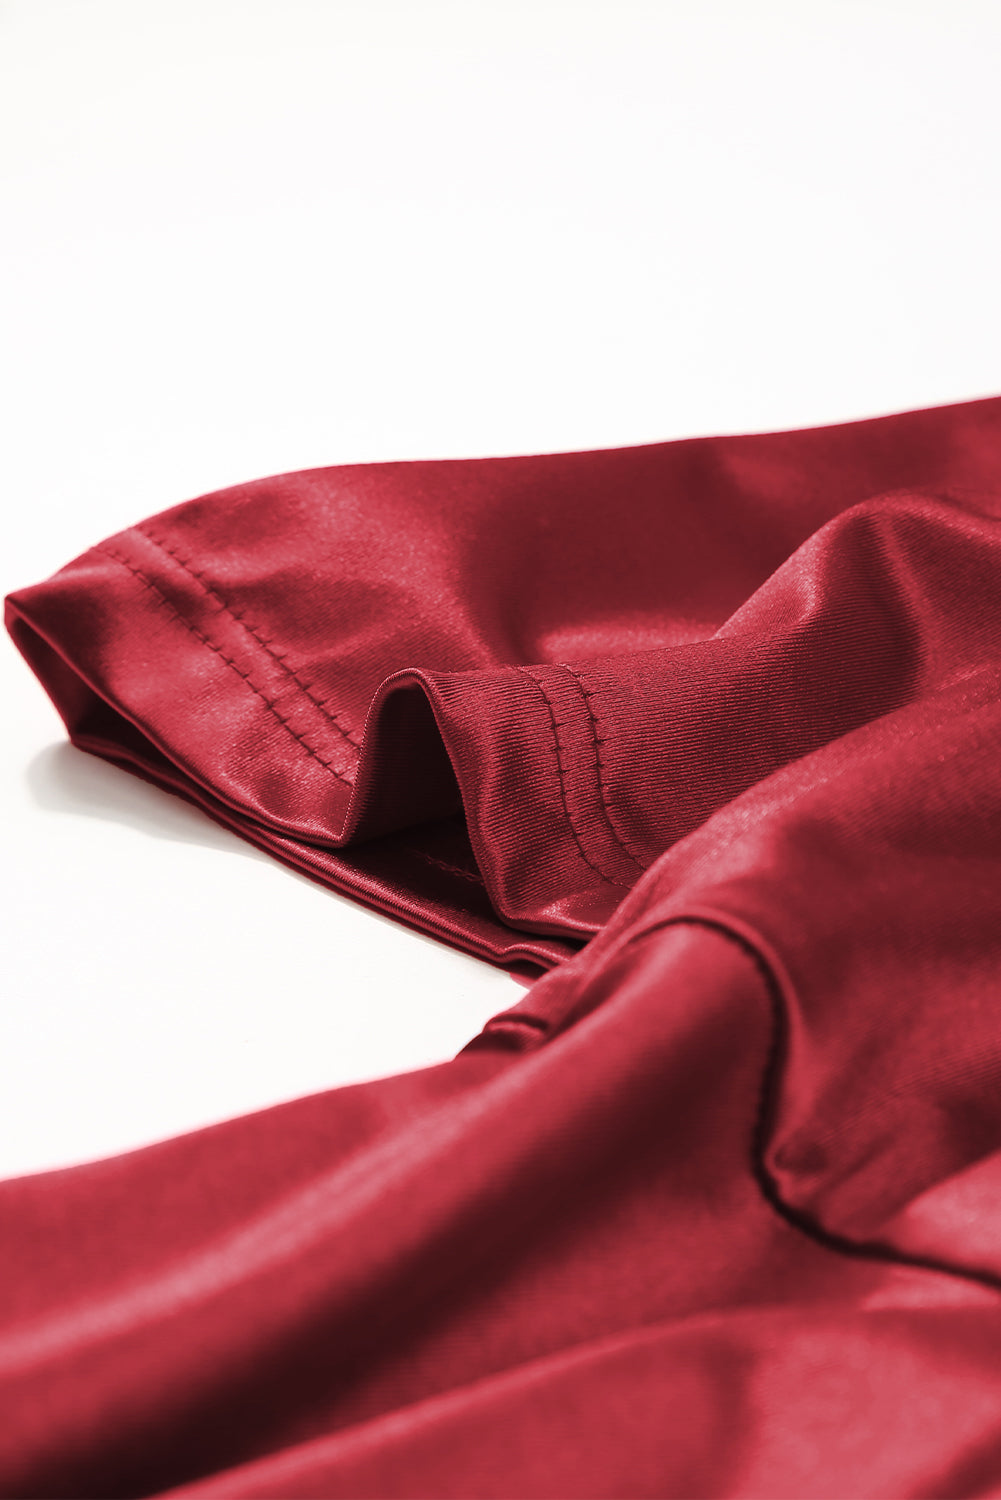 Ognjeno rdeča midi obleka velike velikosti z naborki in napihnjenimi rokavi